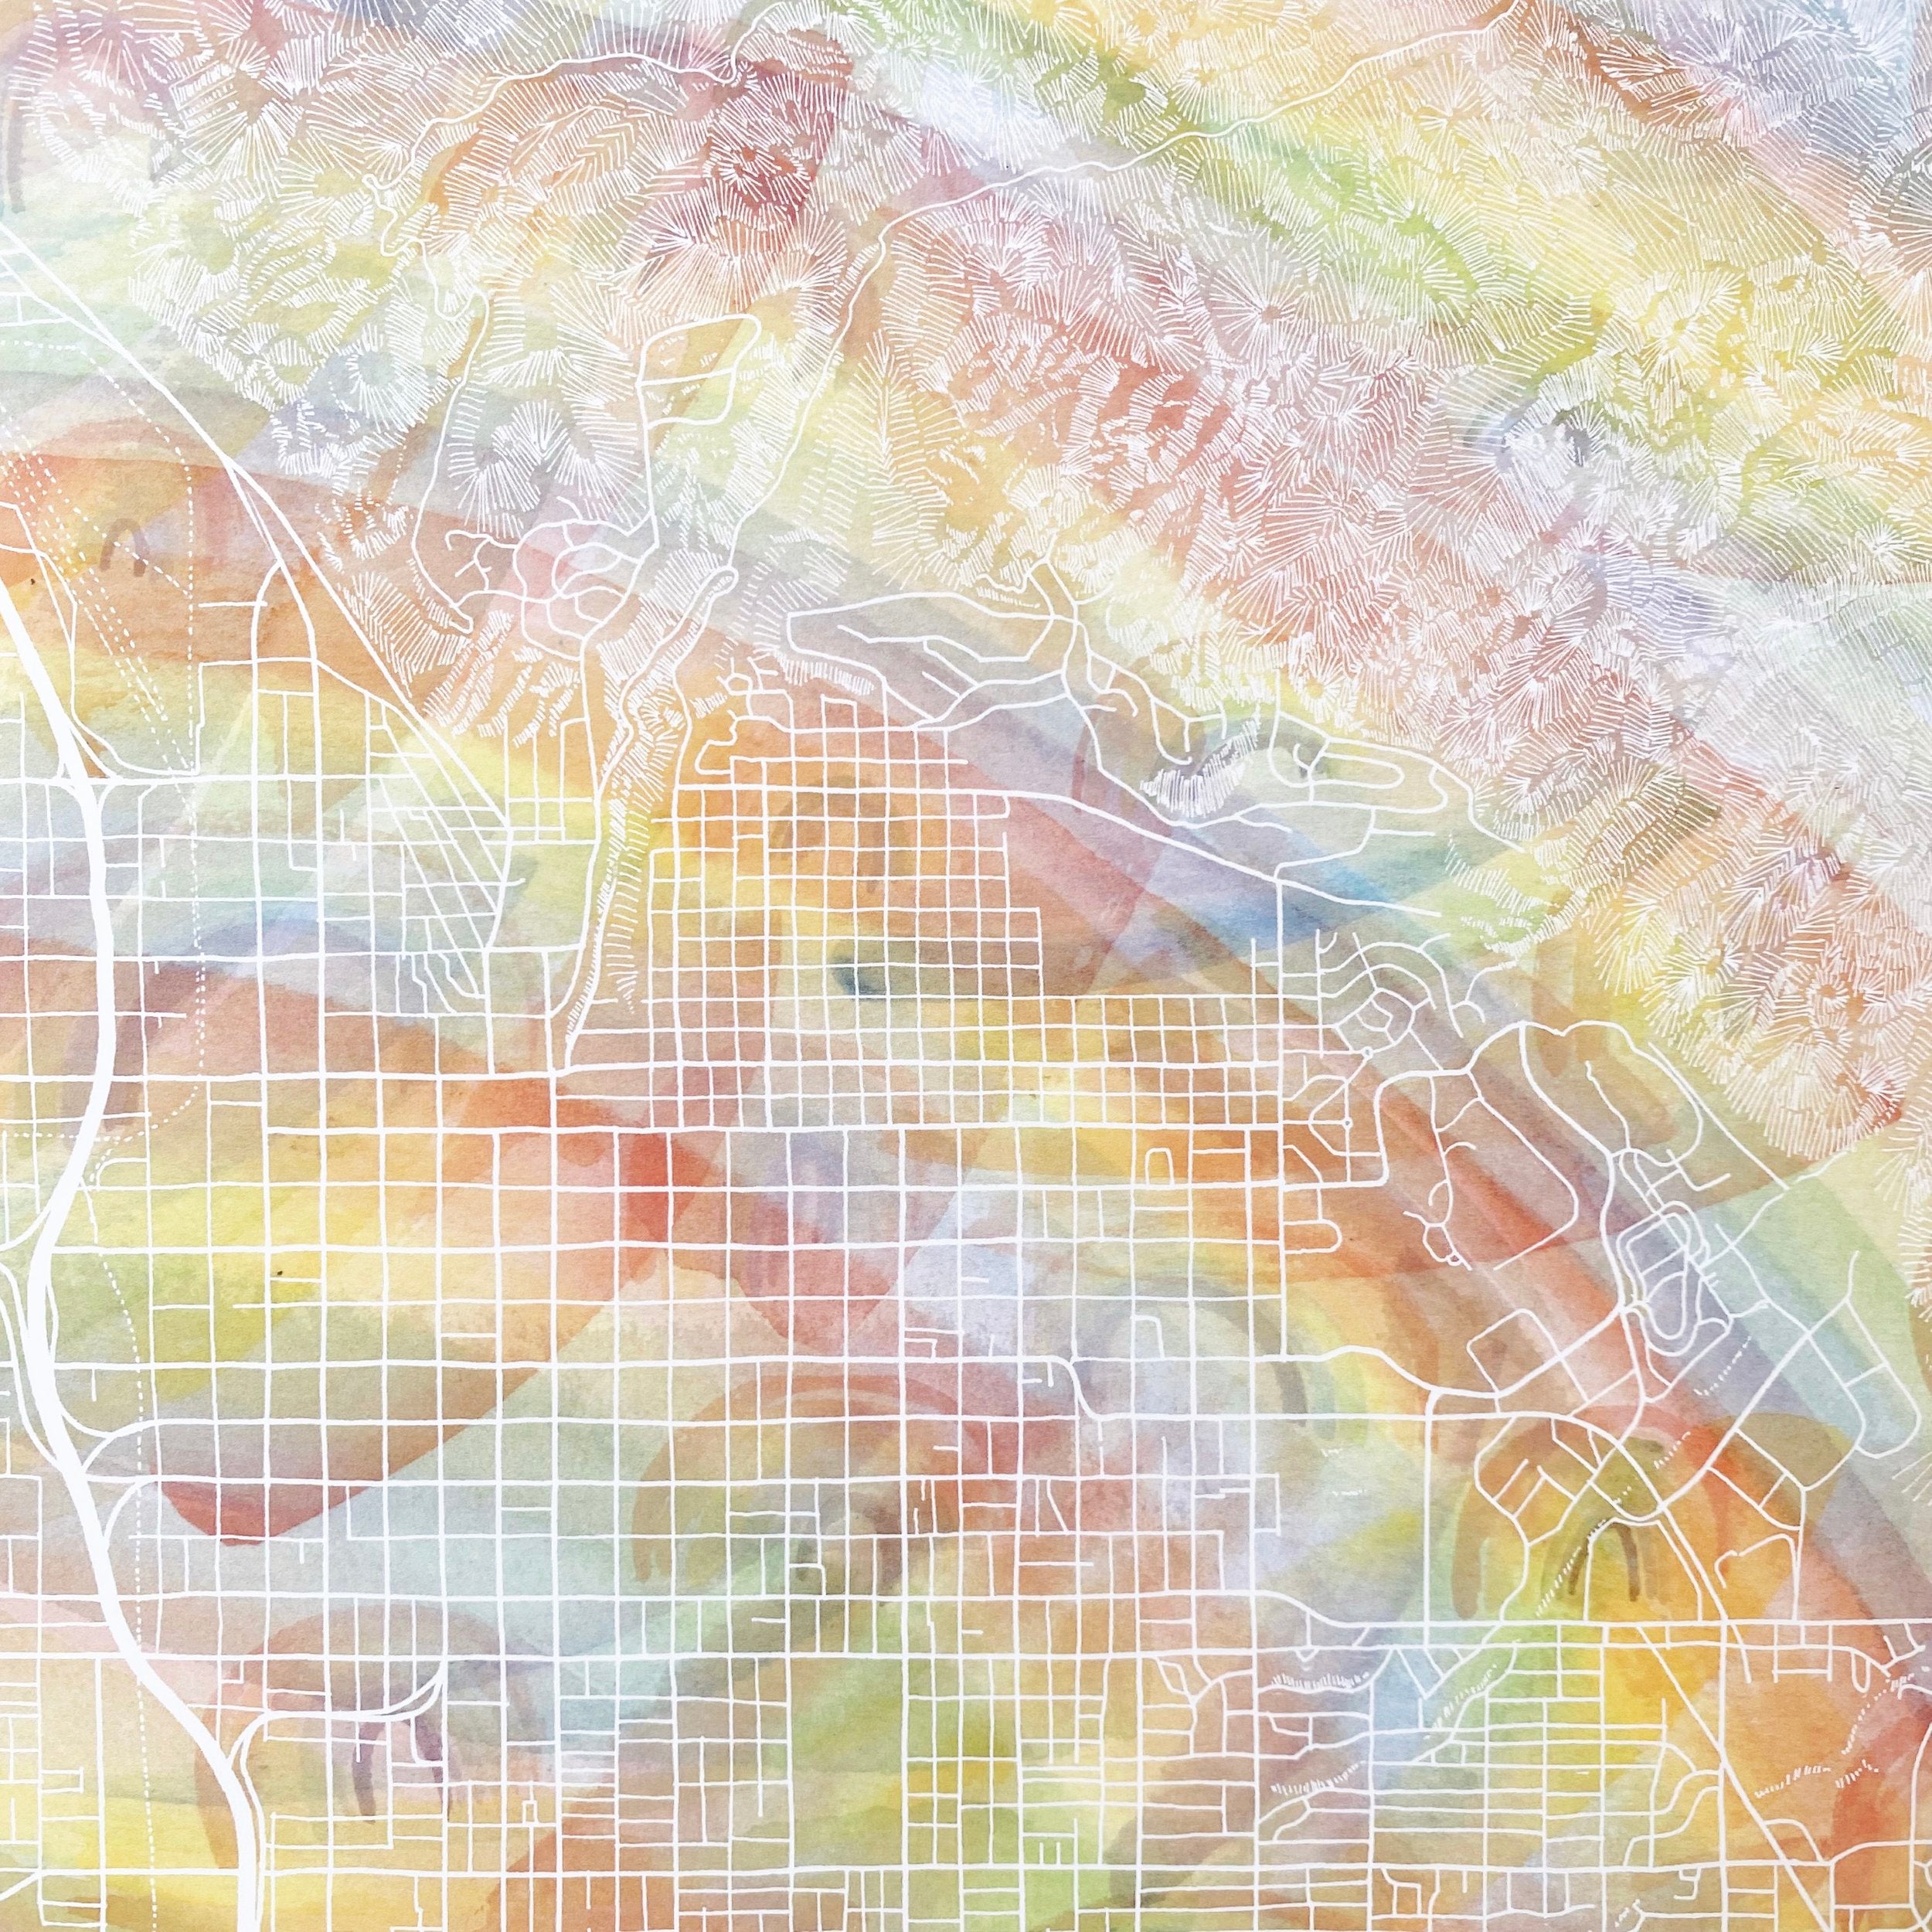 SALT LAKE CITY Pride Rainbow Watercolor Map: PRINT